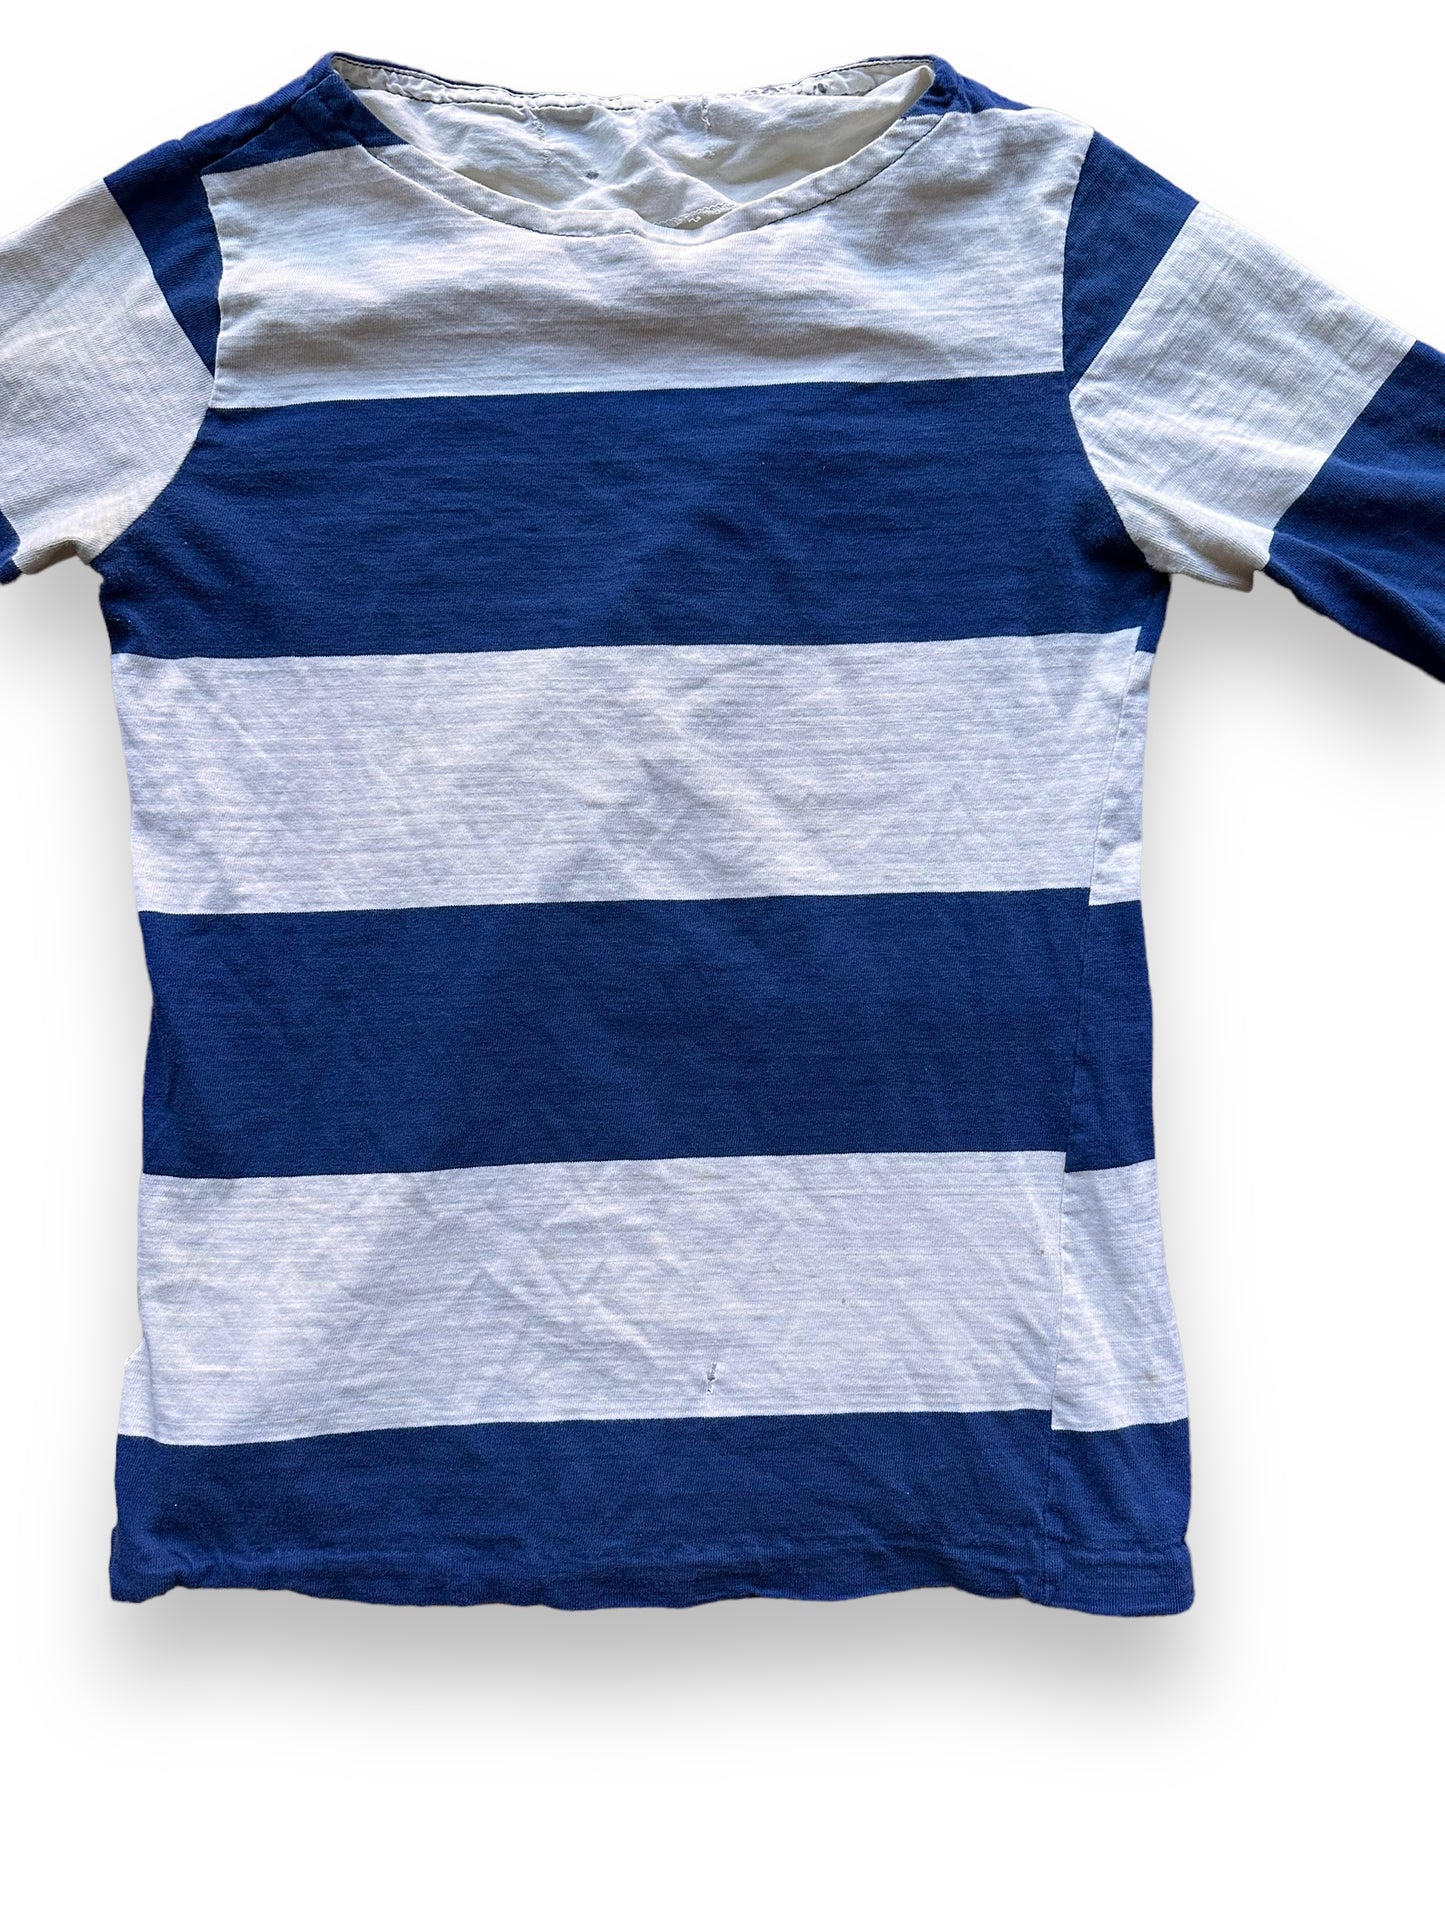 Front Detail on Vintage Blue Striped Surfer Shirt SZ M | Vintage Striped Shirt Seattle | Barn Owl Vintage Seattle